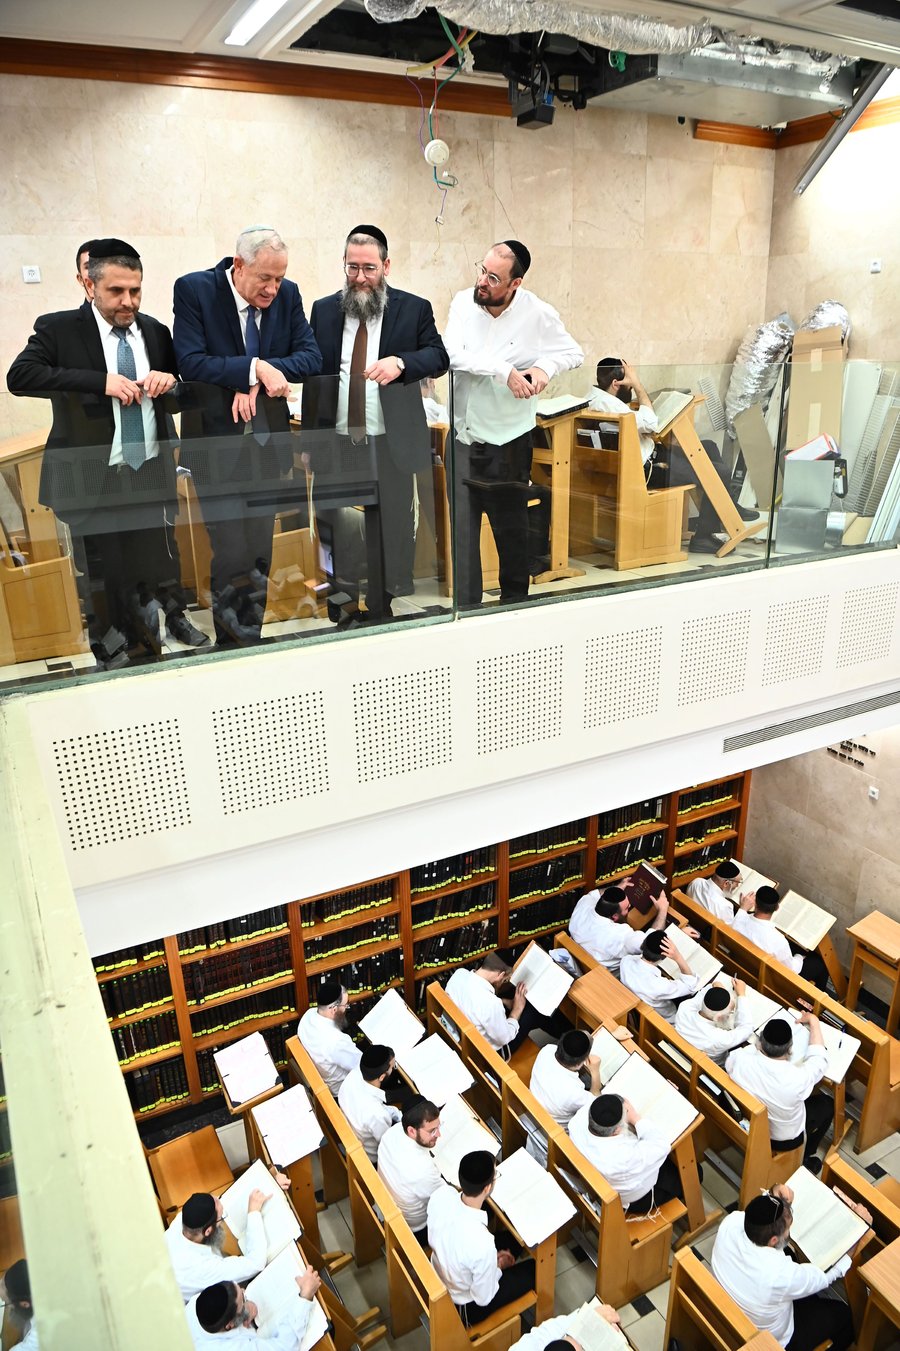 חבר הכנסת בני גנץ ביקר במעונו של הגרמ"צ ברגמן וקיבל מסר ברור: "אין פשרות על התורה"